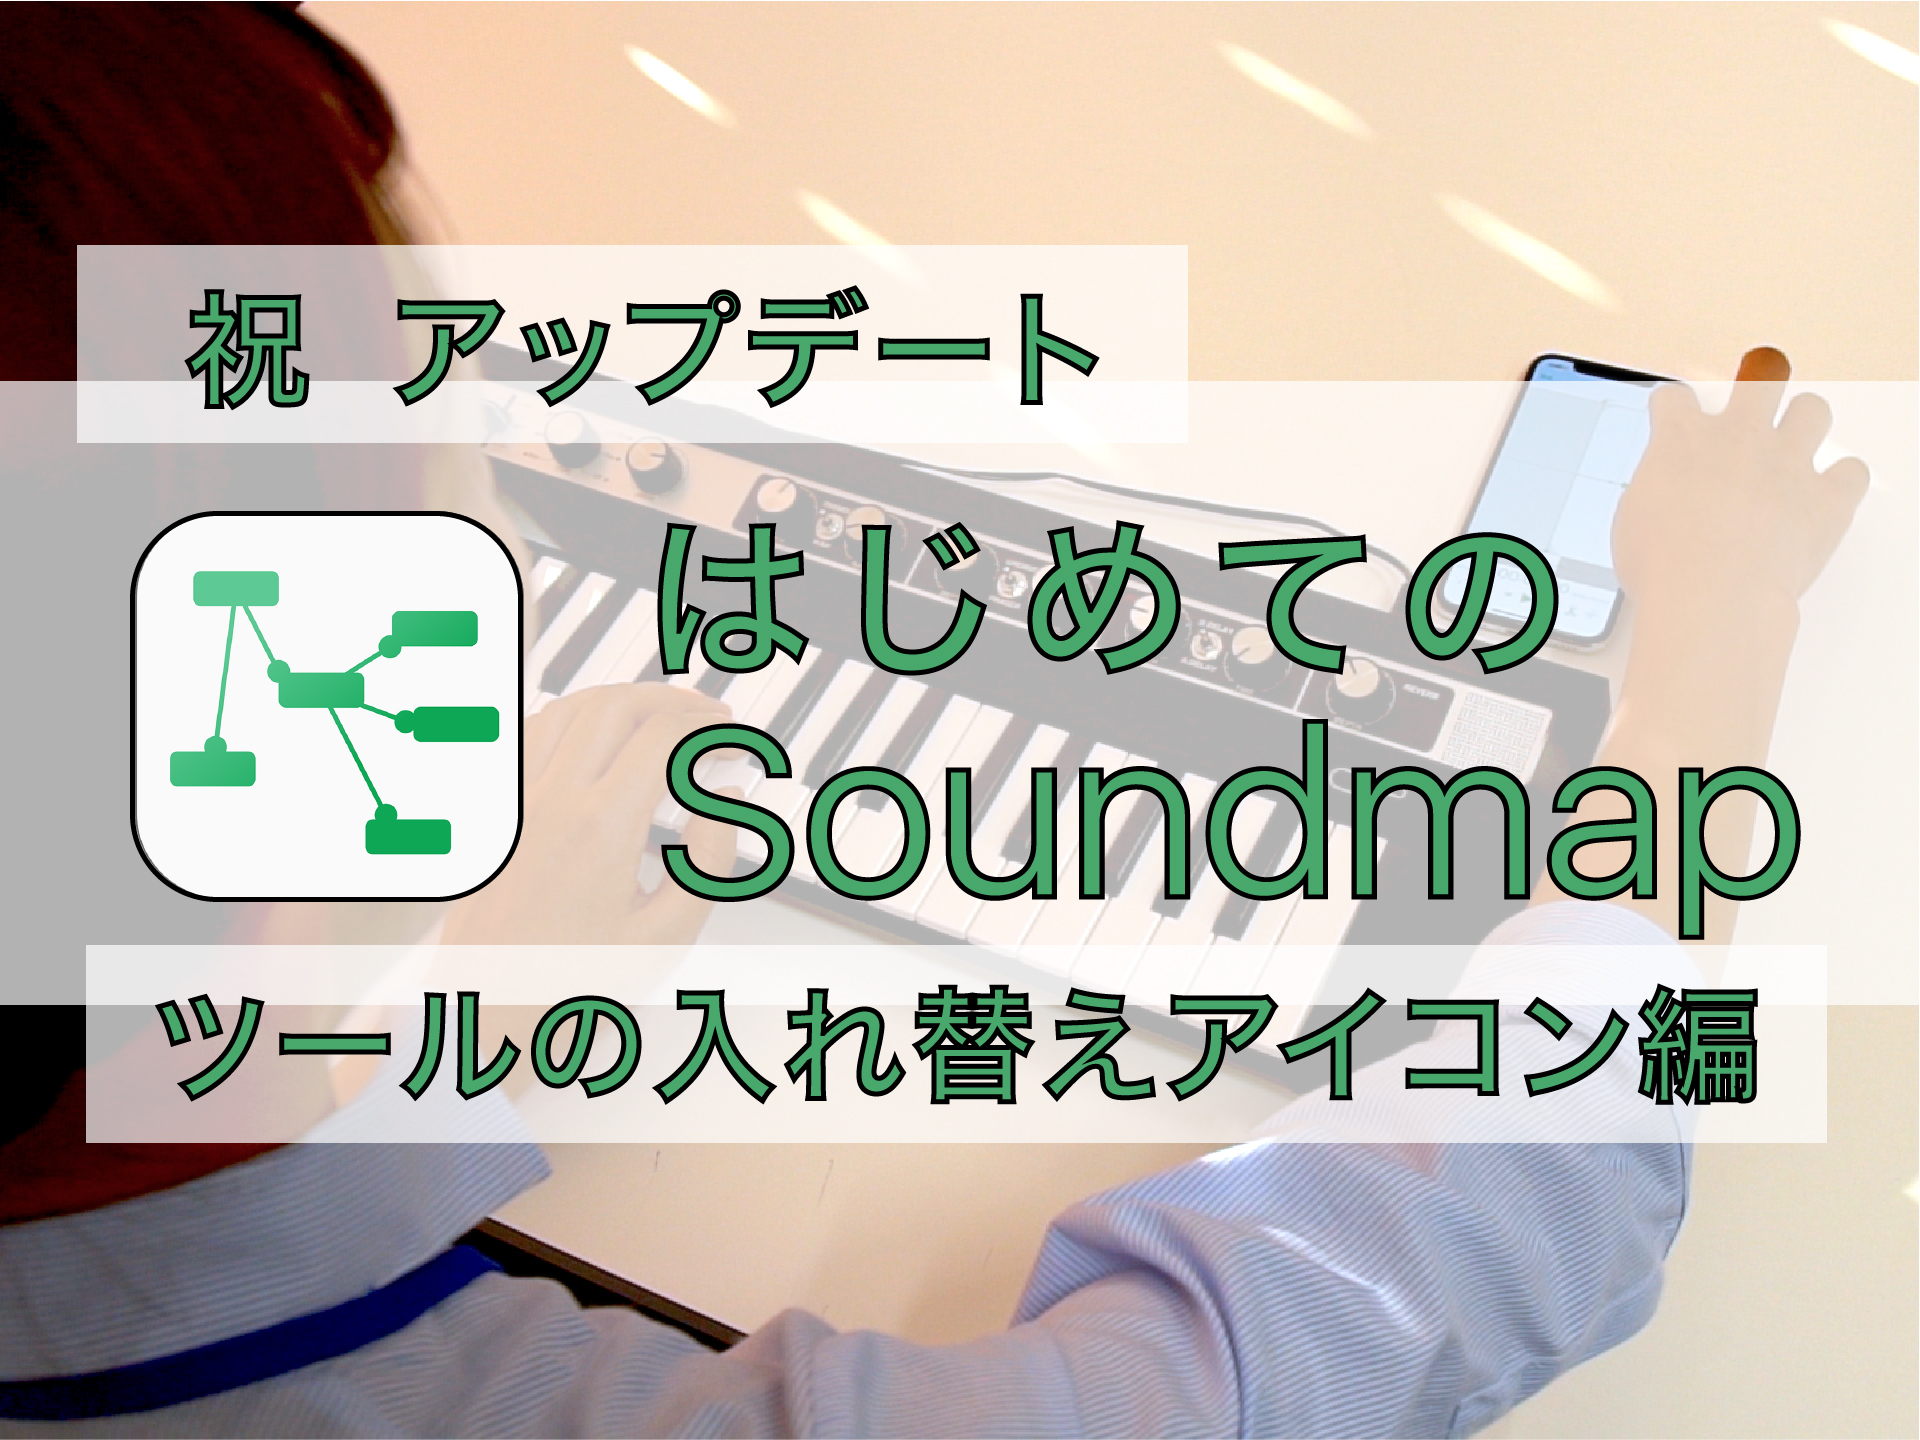 Soundmap_サムネ_ツールの入れ替えアイコン編-01のコピー